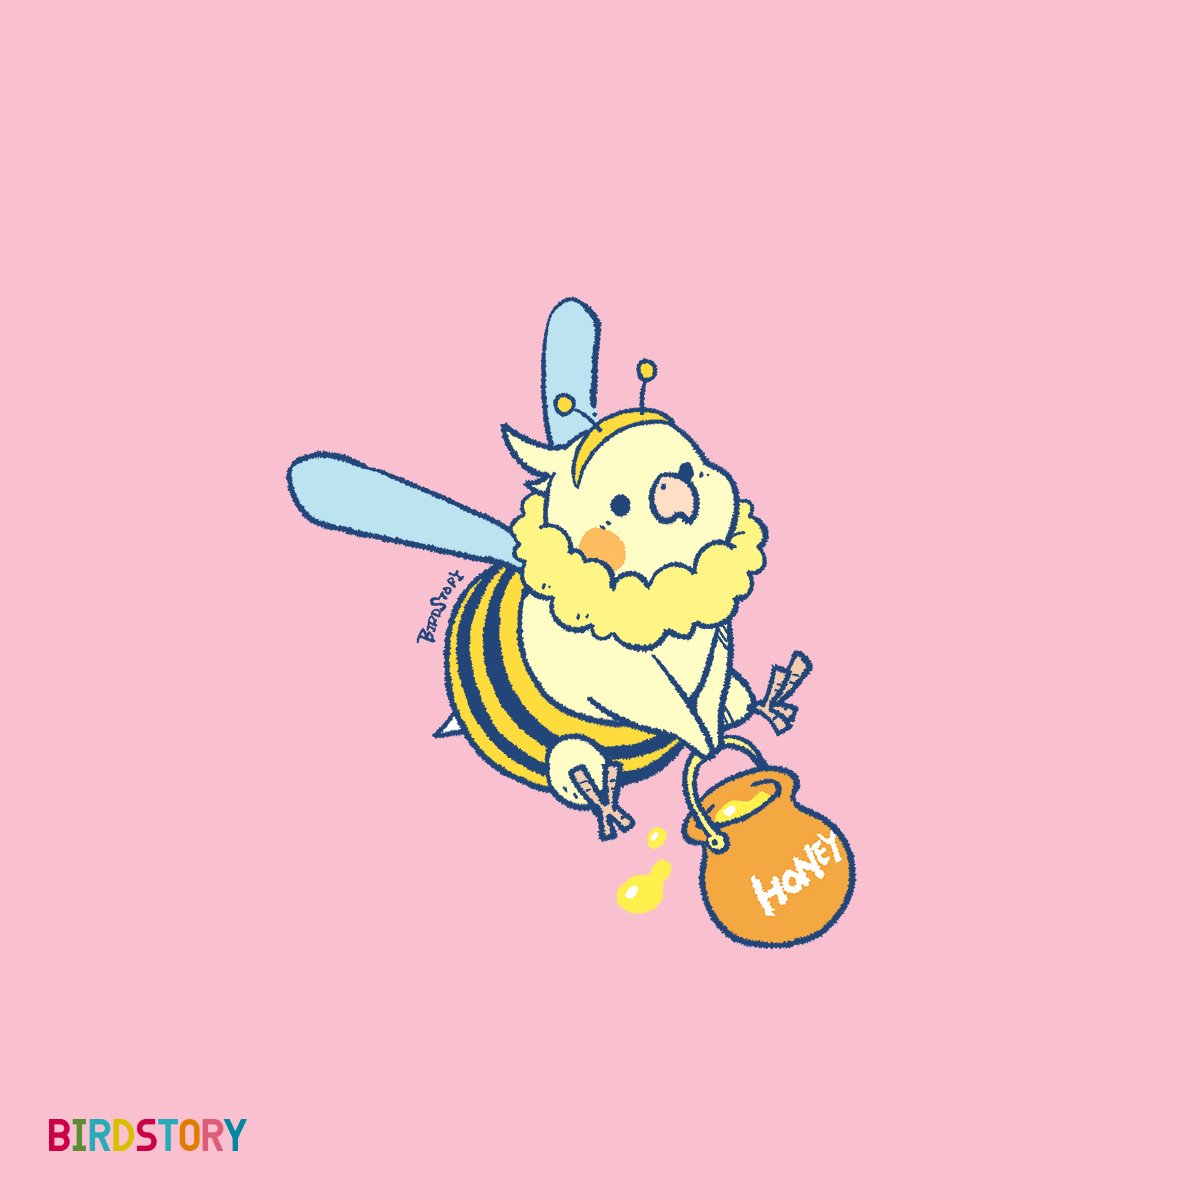 「おはようございます。本日は3月8日、語呂合わせから、ミツバチの日とのことです#B」|BIRDSTORYのイラスト